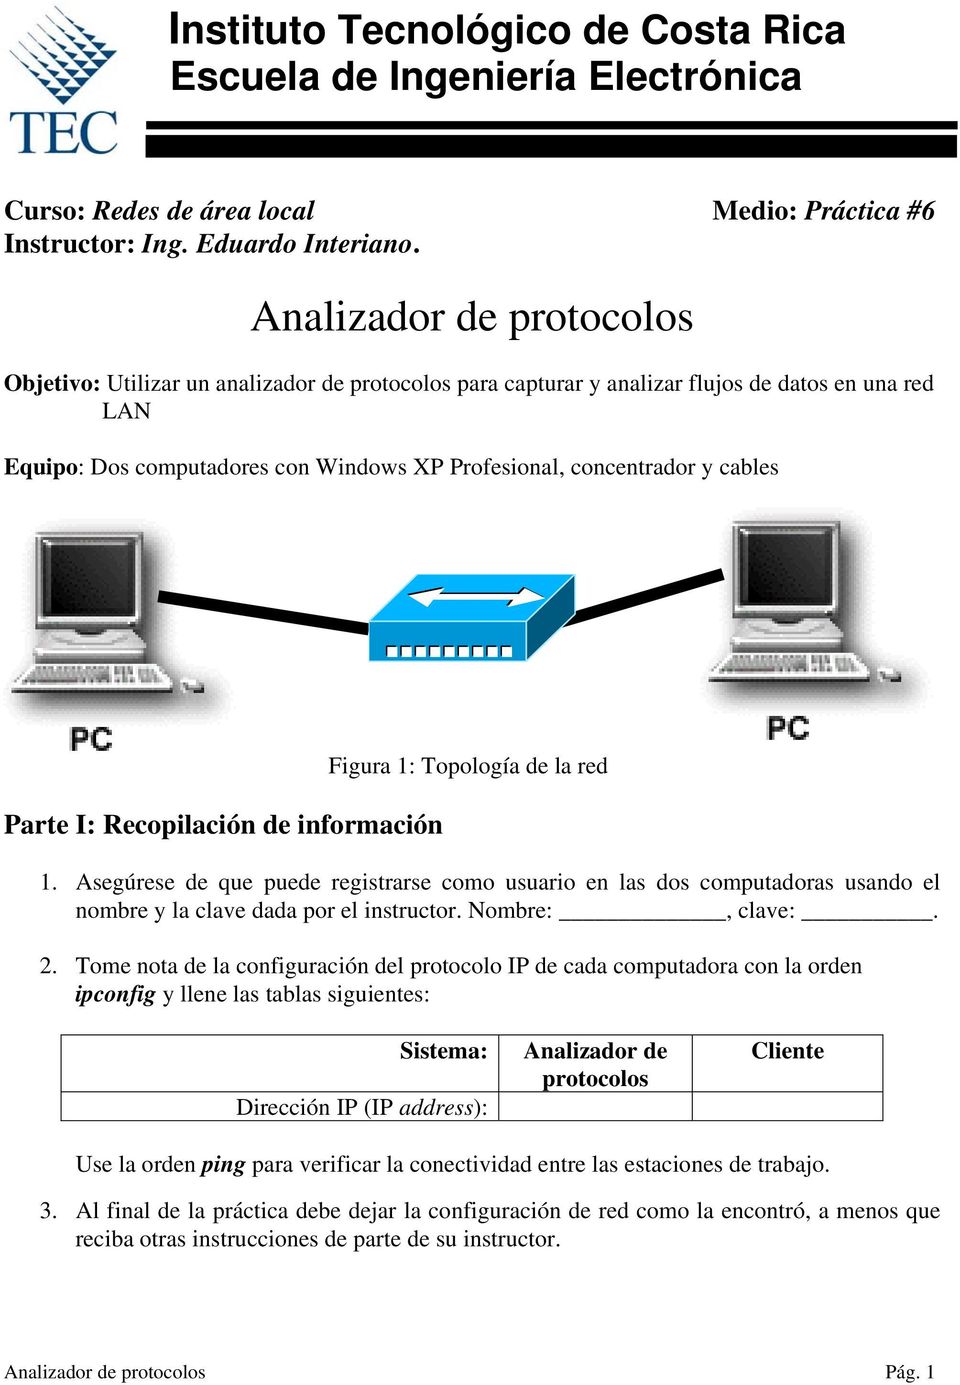 cables Parte I: Recopilación de información Figura 1: Topología de la red 1. Asegúrese de que puede registrarse como usuario en las dos computadoras usando el nombre y la clave dada por el instructor.